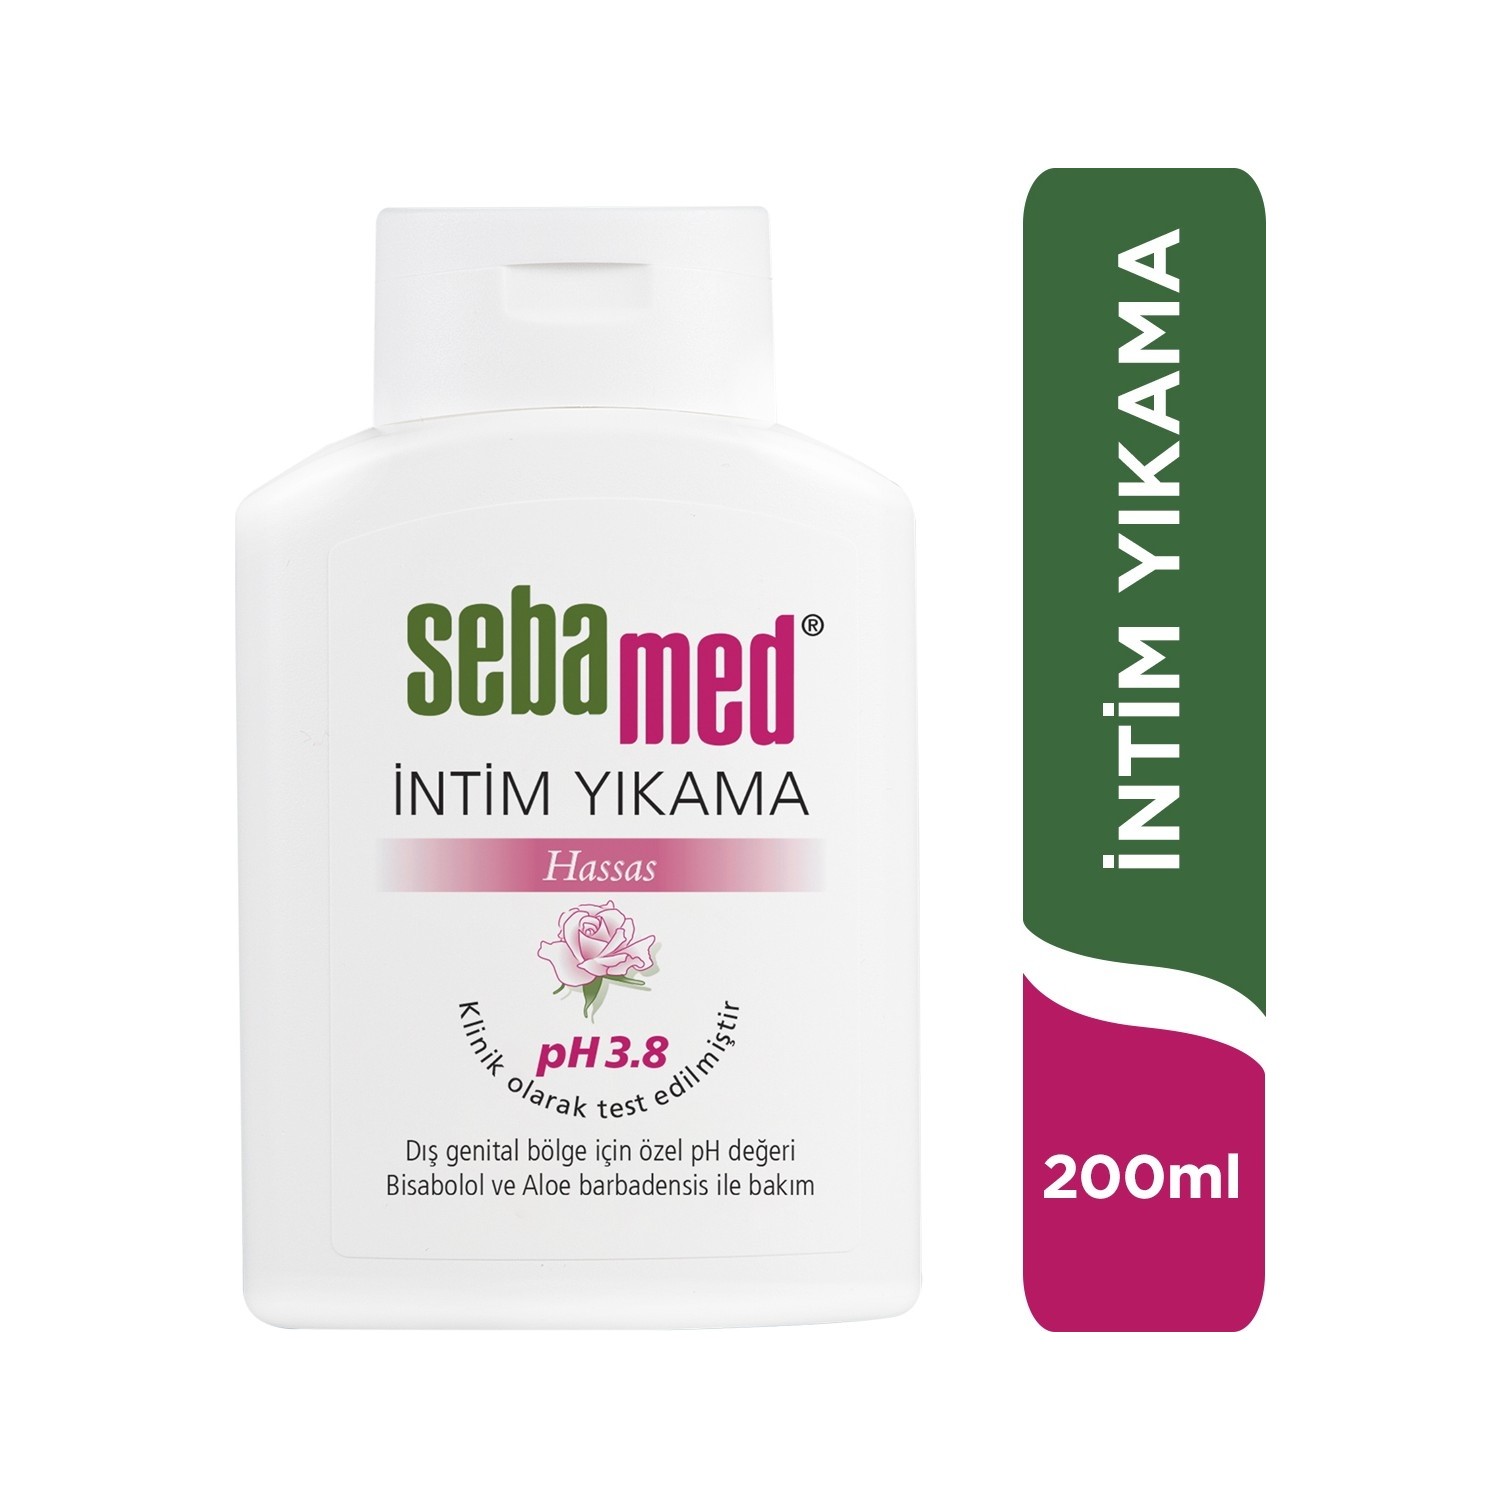 Очищающее средство Sebamed Intim Liquid для интимной гигиены, 200 мл vanicream жидкое очищающее средство для чувствительной кожи 237 мл 8 жидк унций